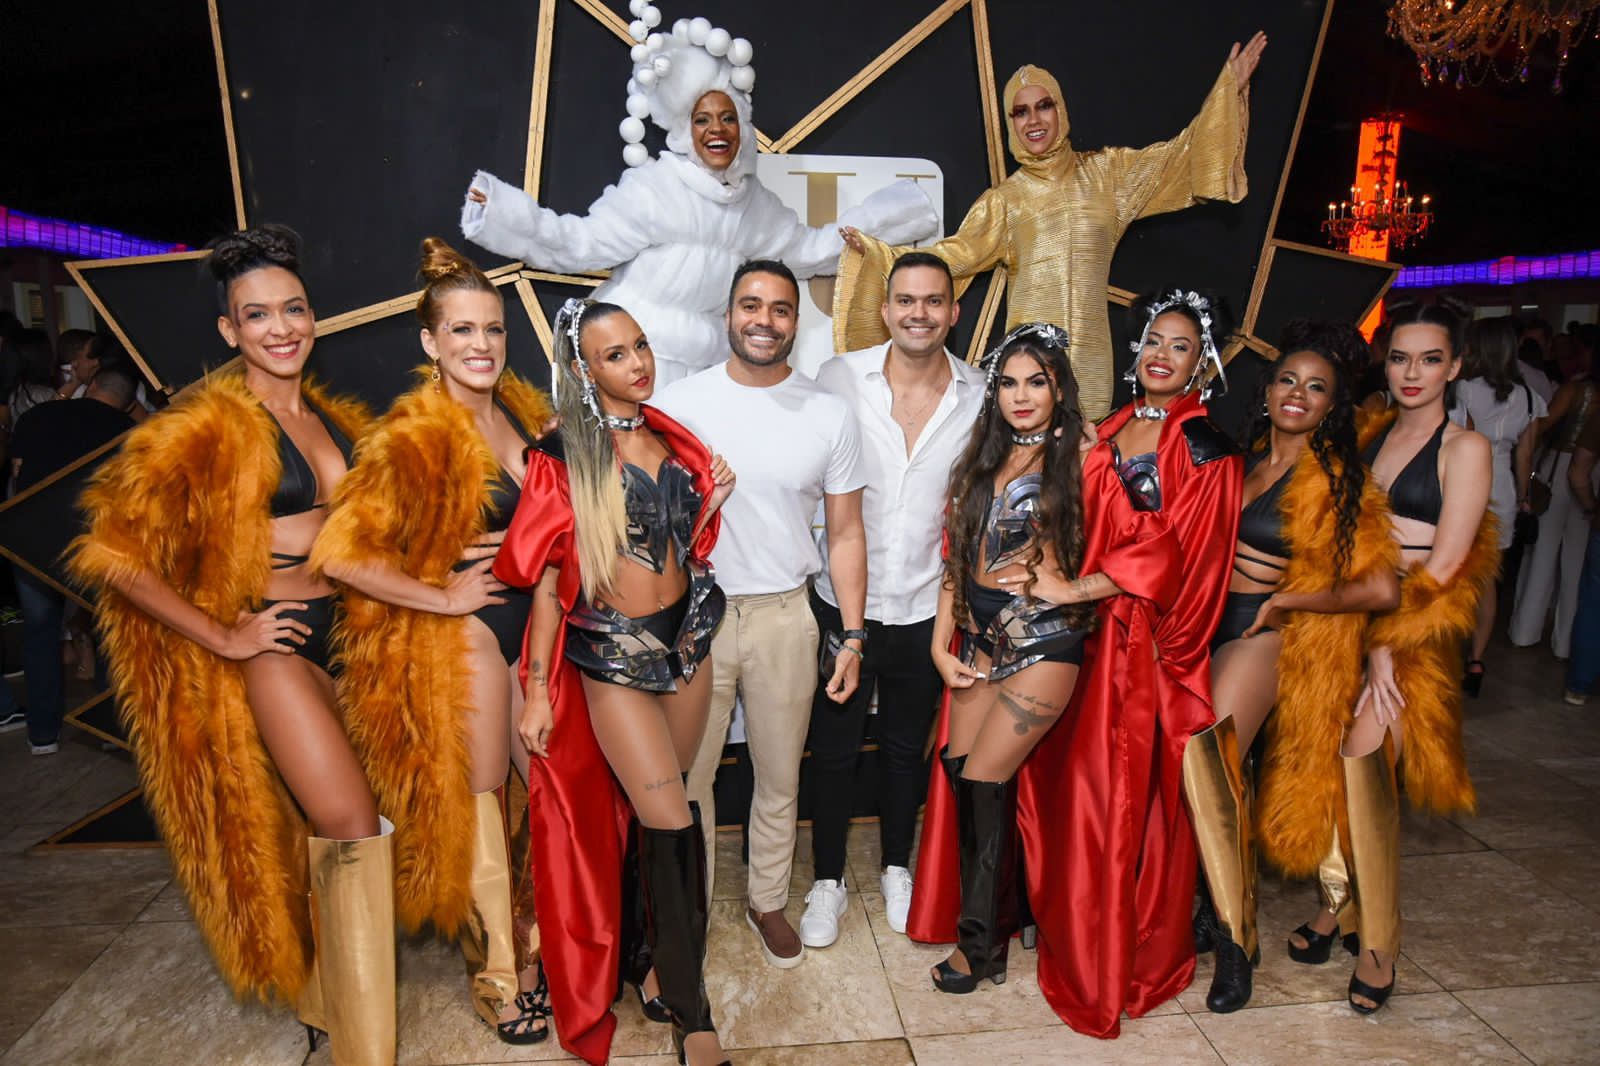  Festa Sublime anima a noite de Salvador com shows de Durval Lelys e Danniel Vieira; veja as fotos 